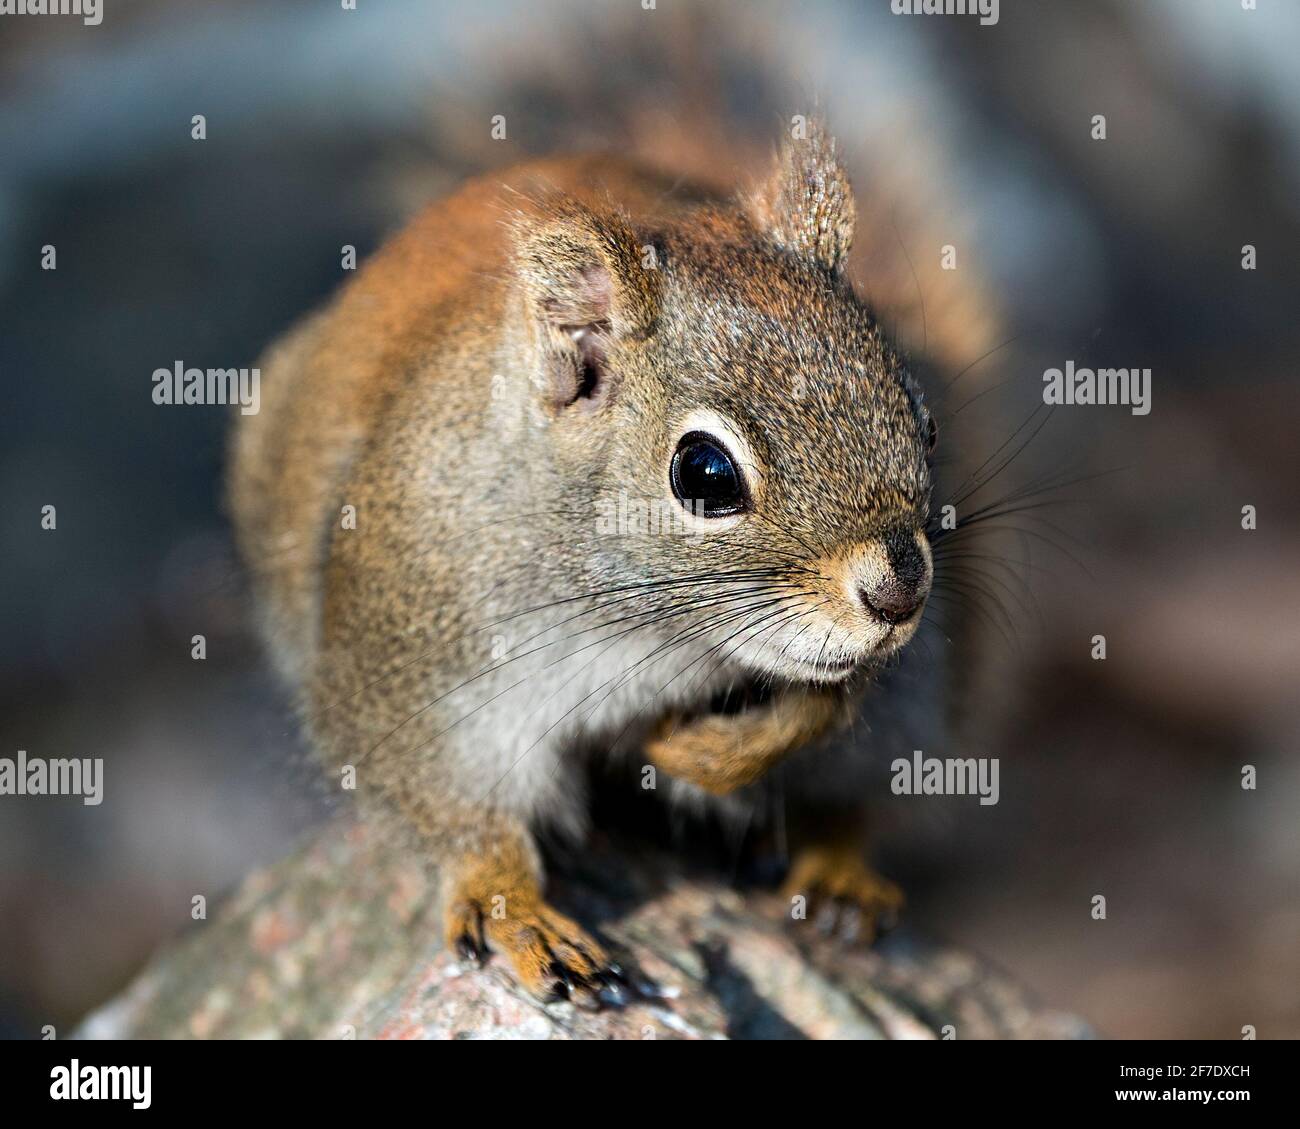 Eichhörnchen Kopf Nahaufnahme Vorderansicht auf einem Felsen mit einem unscharfen Hintergrund in seiner Umgebung und Lebensraum sitzen. Bild. Bild. Hochformat. Stockfoto